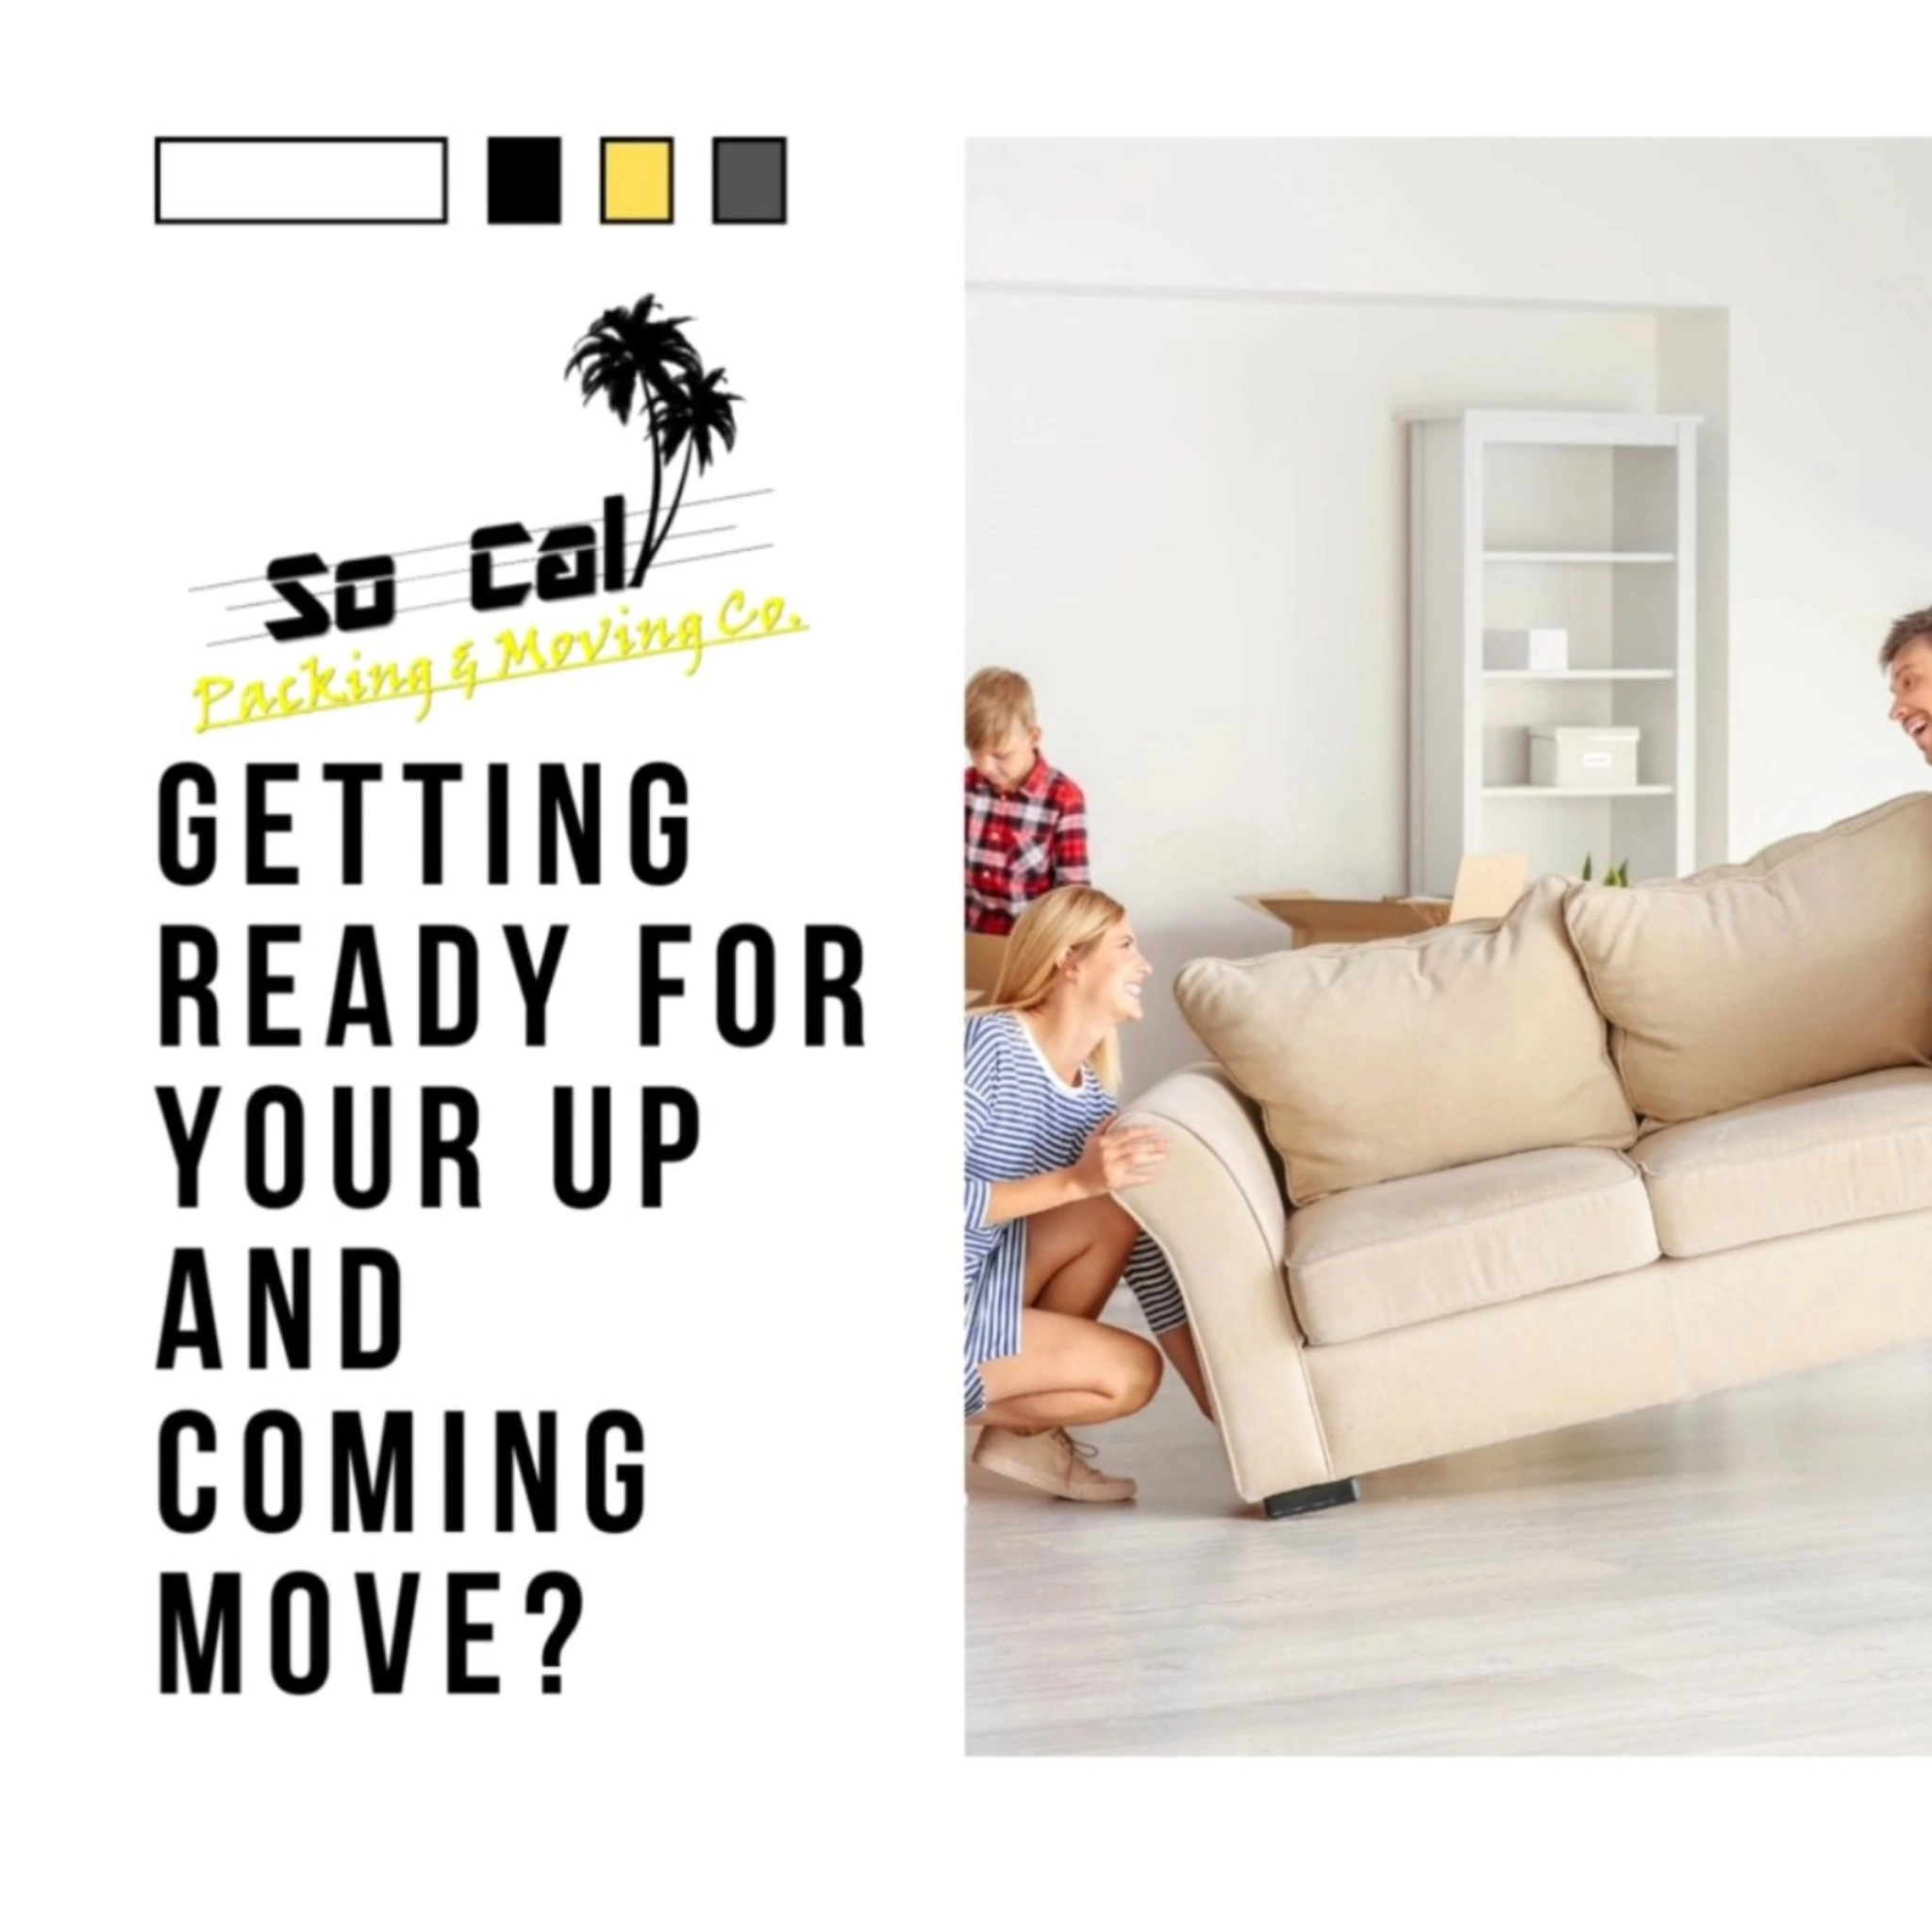 Family move a sofa